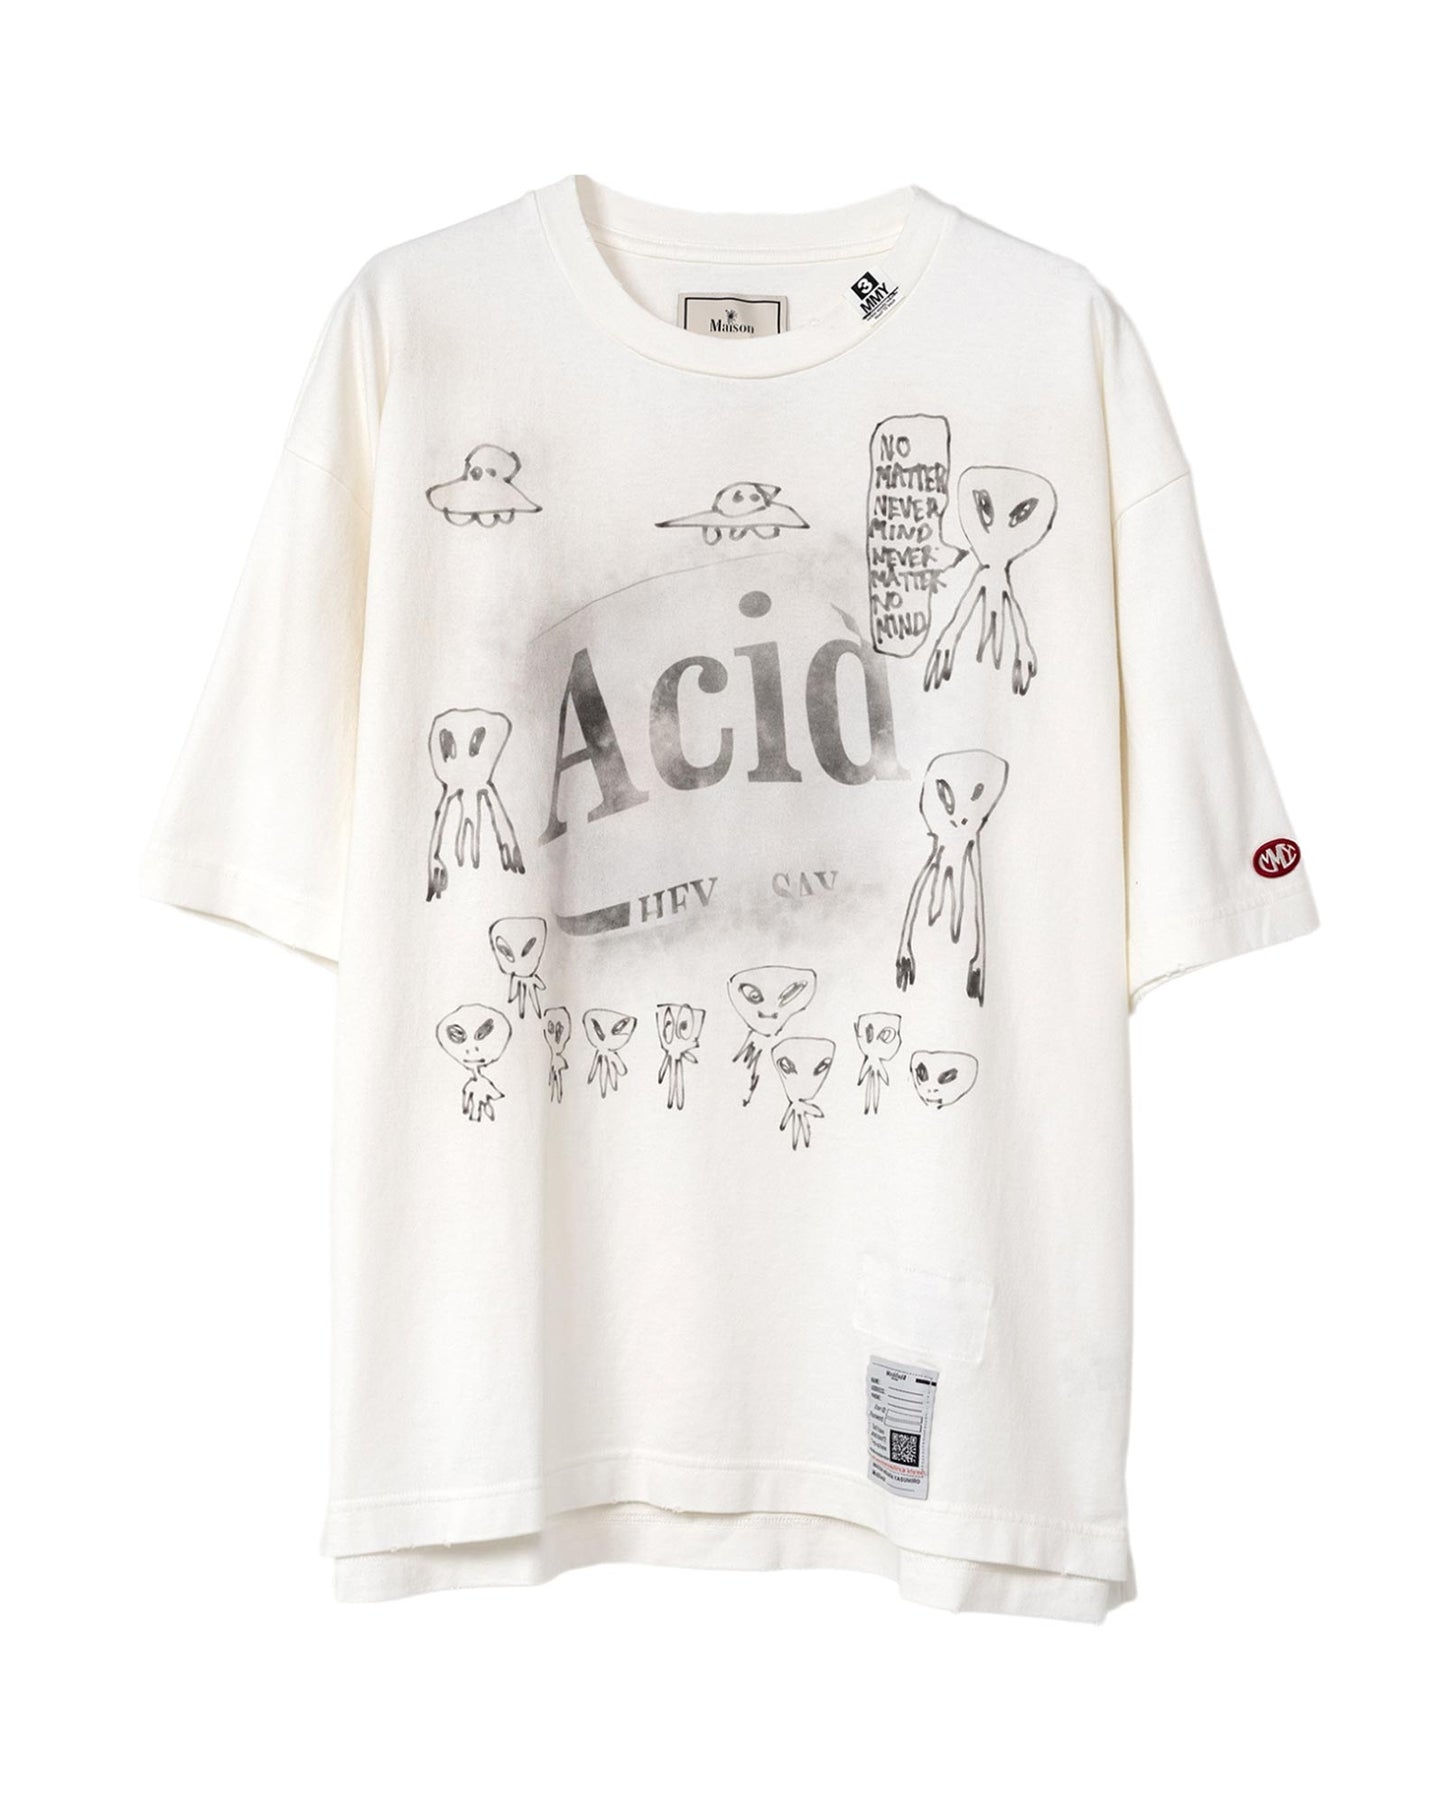 ミハラヤスヒロ/distressed Acid Tee/J12TS552/Tシャツ/WHITE